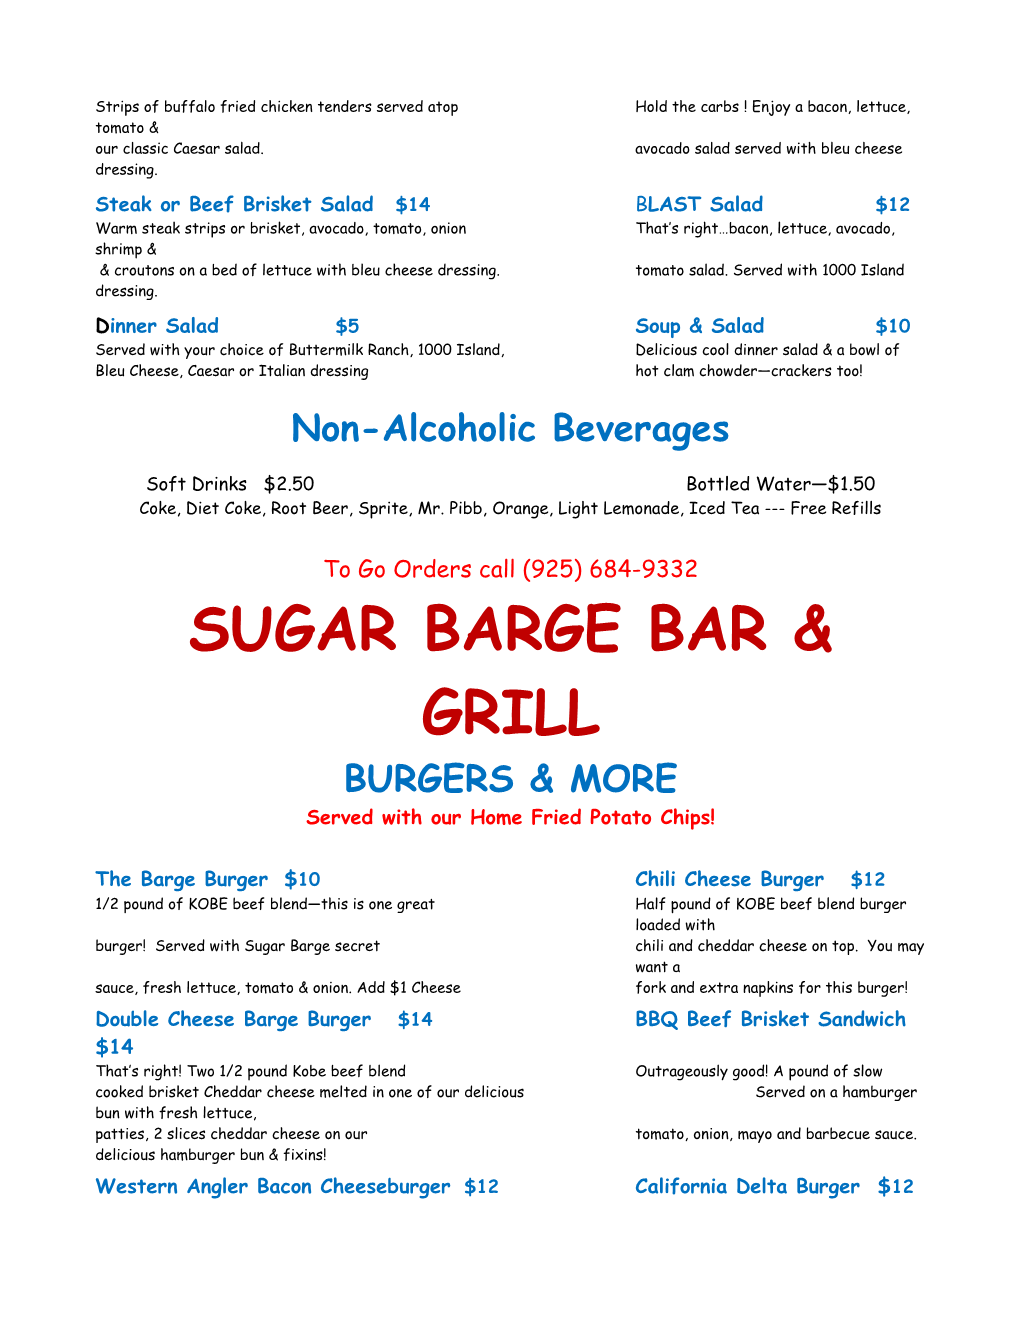 Sugar Barge Bar & Grill